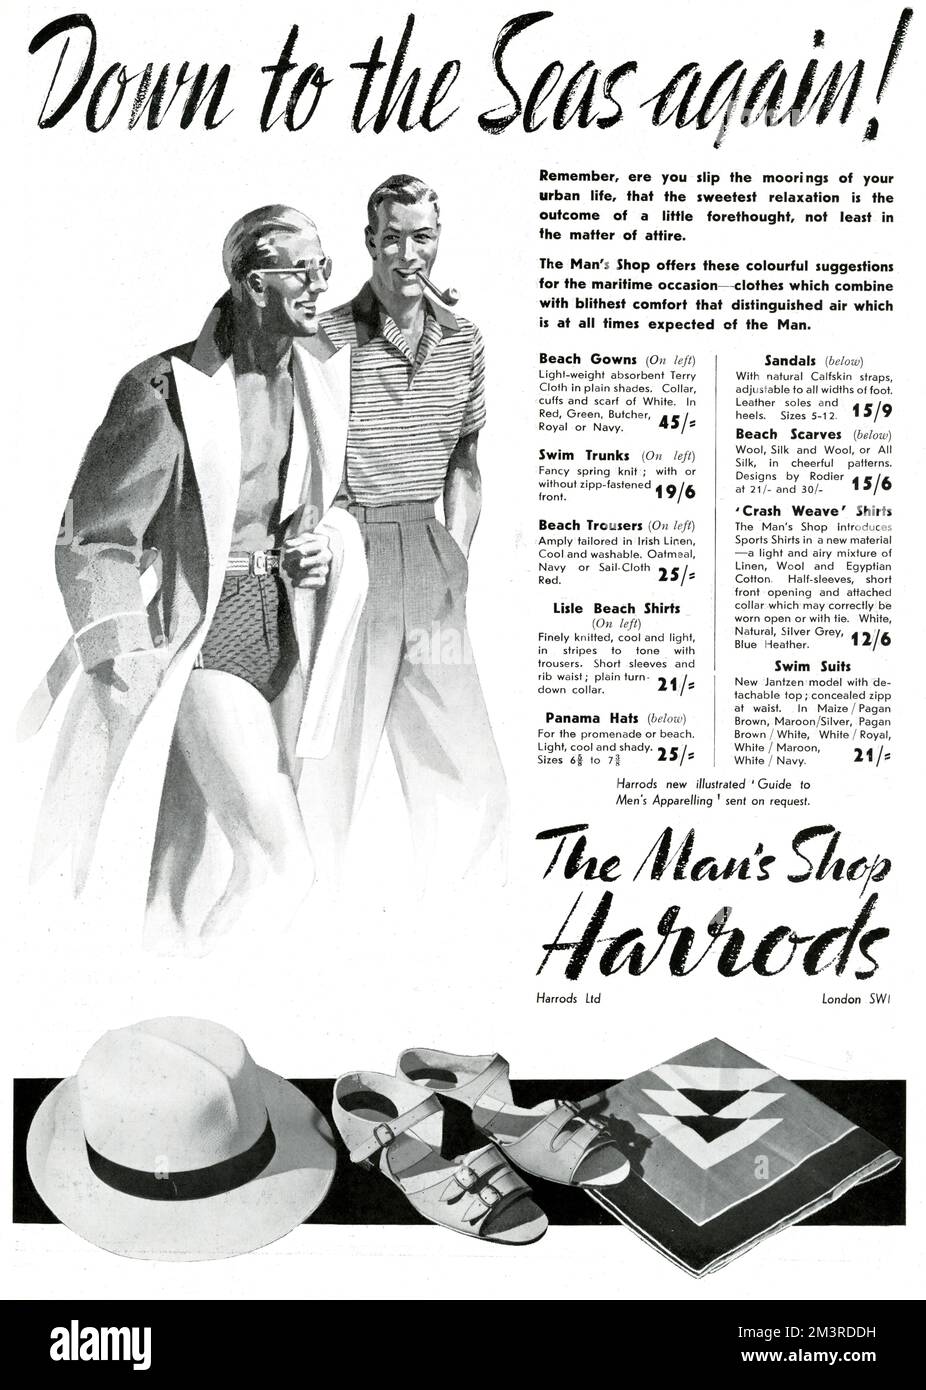 Werbung für den man's Shop bei Harrods, speziell Werbung für Kleidung für Urlaub und Kreuzfahrten, einschließlich Badekleidung, Badehosen, Strandhosen, Lisle Beach Shirts, panamahüten und Sandalen. Datum: 1937 Stockfoto